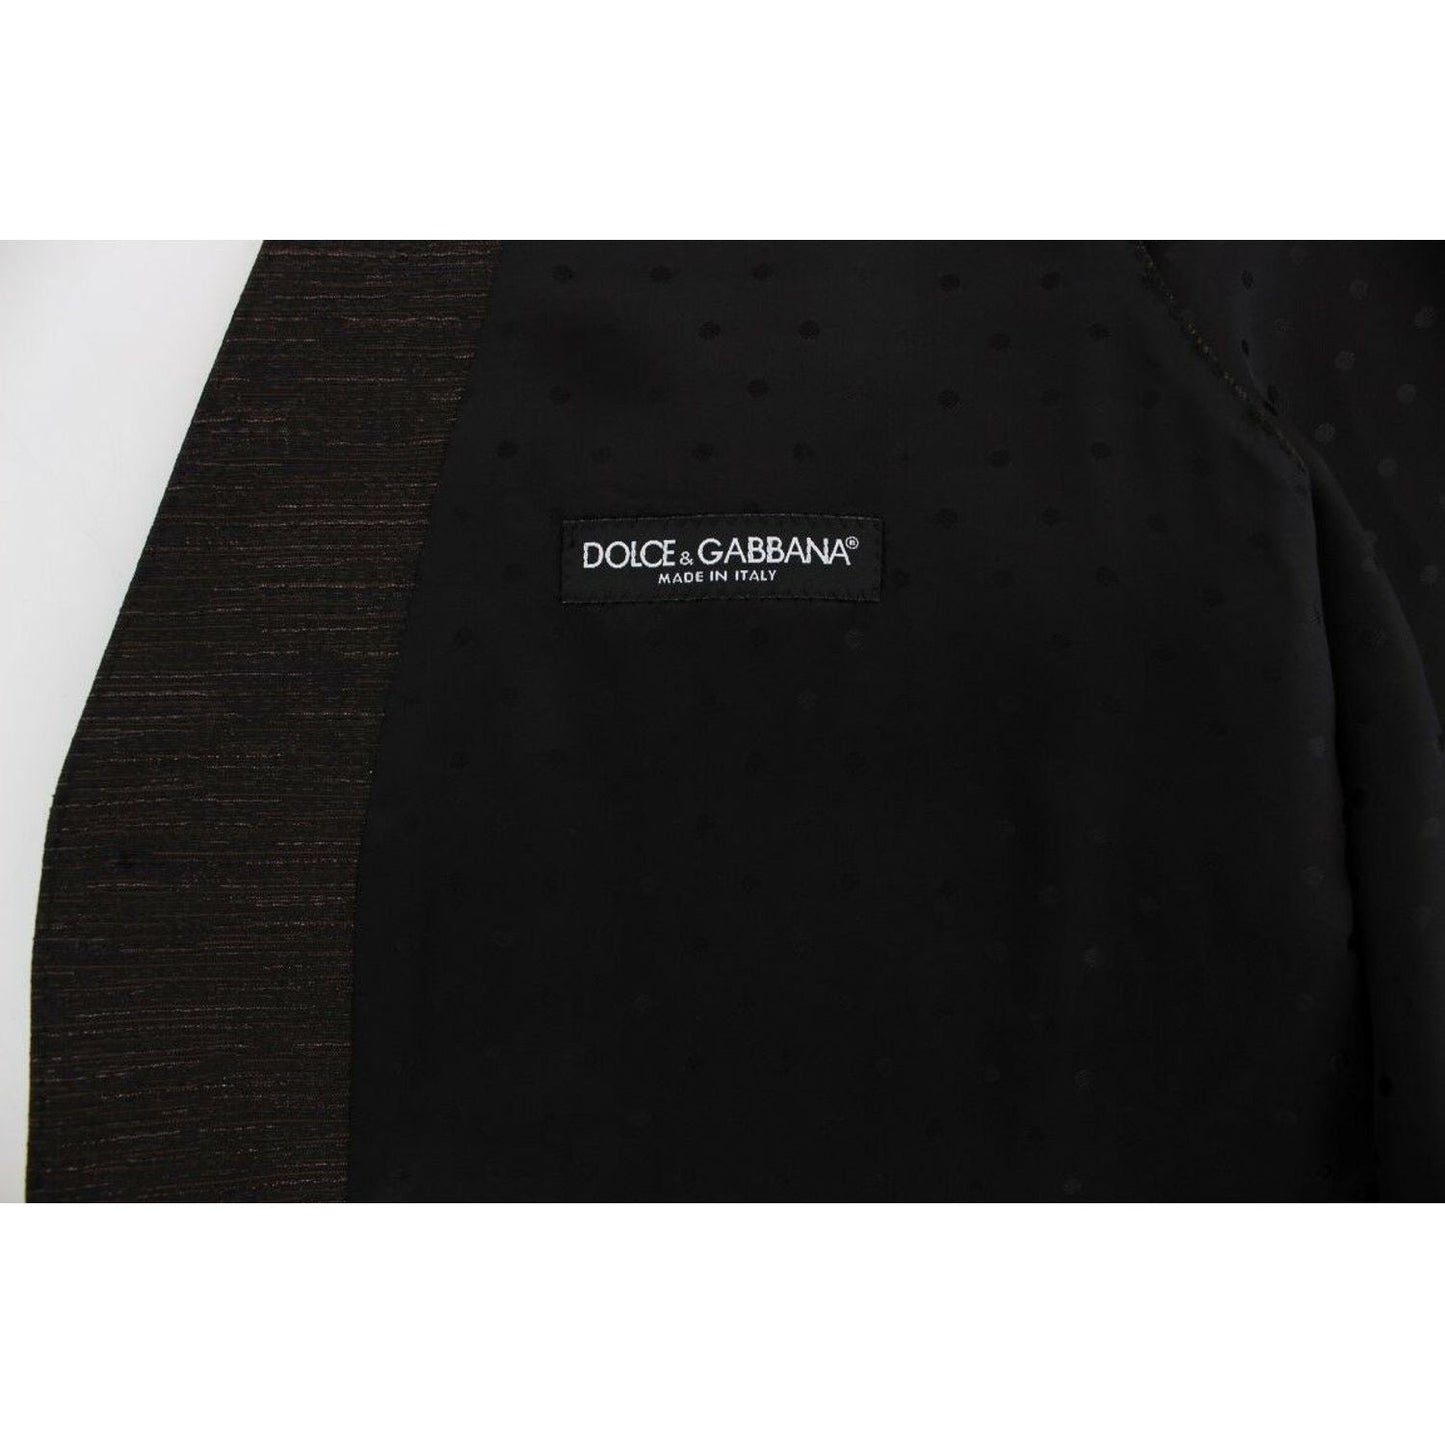 Dolce & GabbanaElegant Brown Black Wool Blend Dress VestMcRichard Designer Brands£259.00